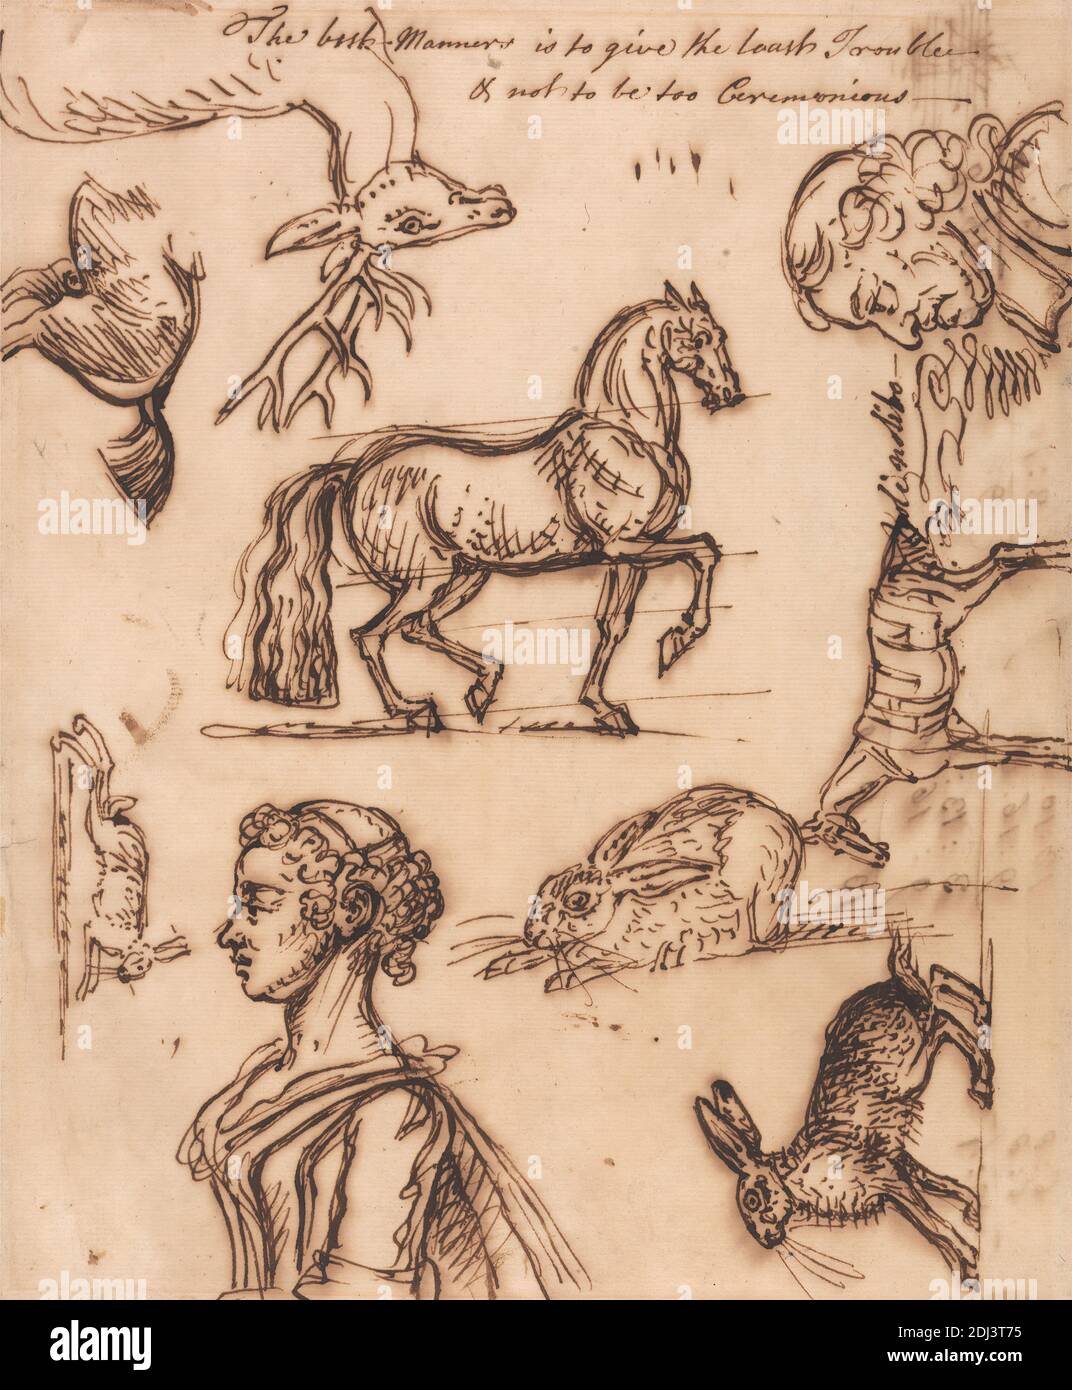 Schizzi di lepre, Cavallo, Stag, uomo e donna, James Seymour, 1702–1752, inglese, non satinato, penna, in inchiostro marrone su medio, leggermente testurizzato, beige, carta posata, montaggio: 11 1/4 × 9 11/16 pollici (28.6 × 24.6 cm), Contemporaneo bordo disegnato: 10 5/16 × 8 9/16 pollici (26.2 × 21.7 cm), e foglio: 9 13/16 × 8 1/16 pollici (24.9 × 20.5 cm), arte animale, studio della figura, soggetto del genere, lepre, cavallo (animale), uomo, profilo (disegno ortografico), schizzi, stag, donna Foto Stock